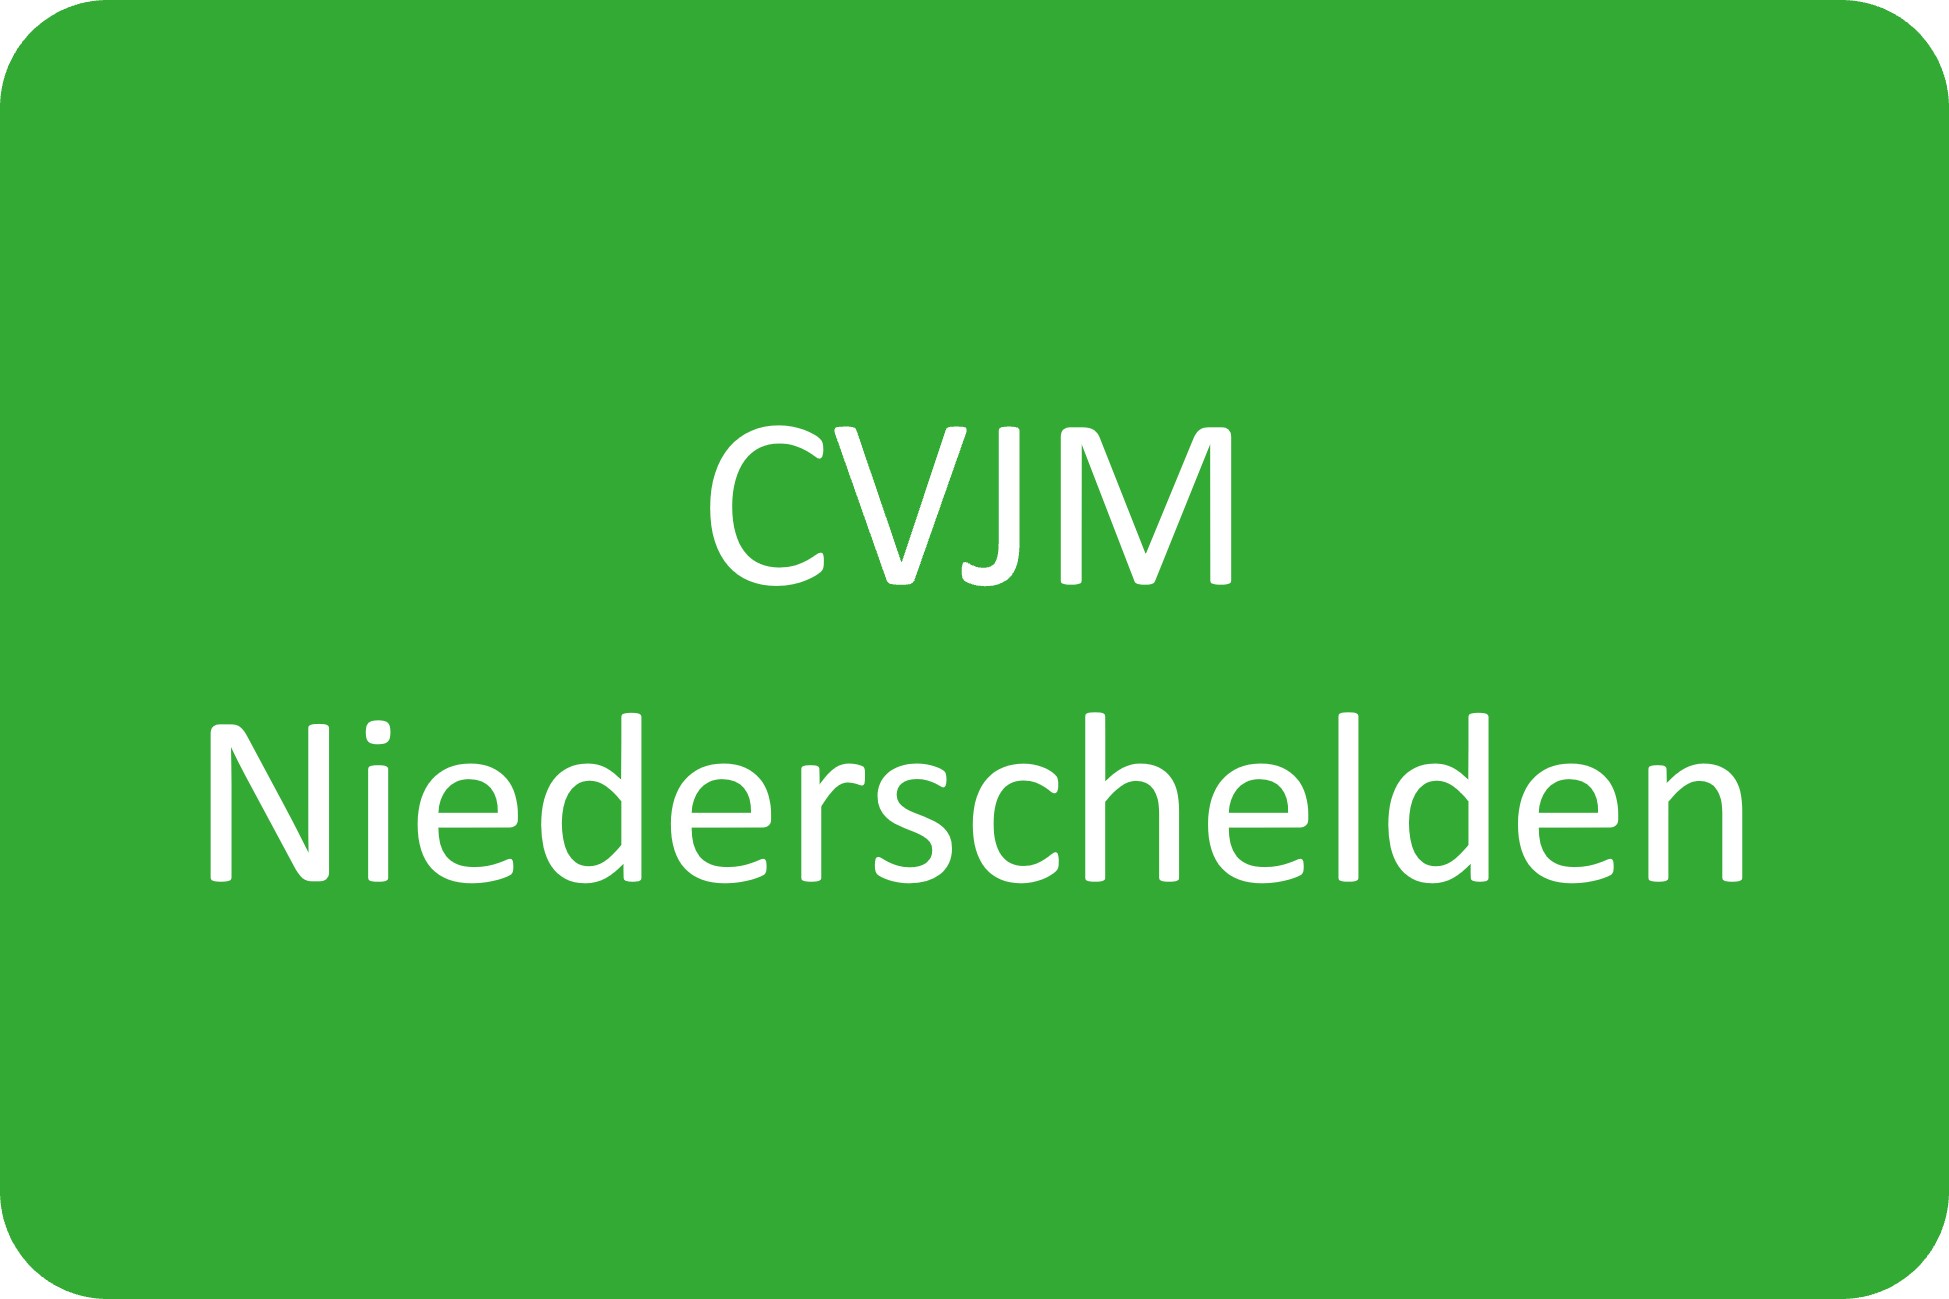 CVJM Niederschelden